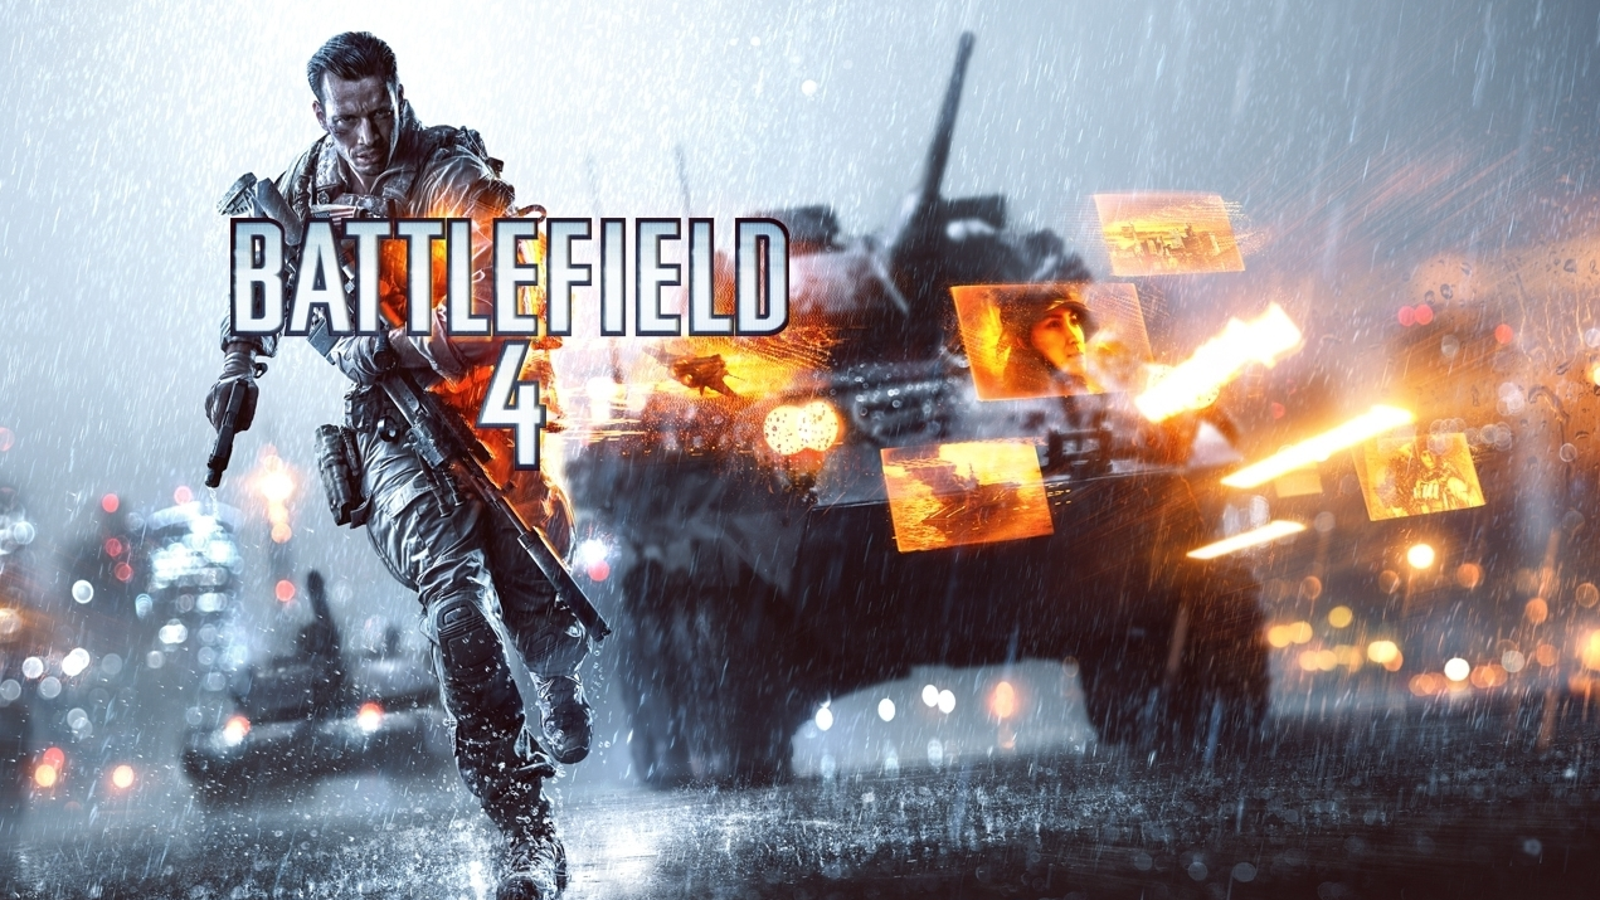 More details on Battlefield 4's Battlelog service